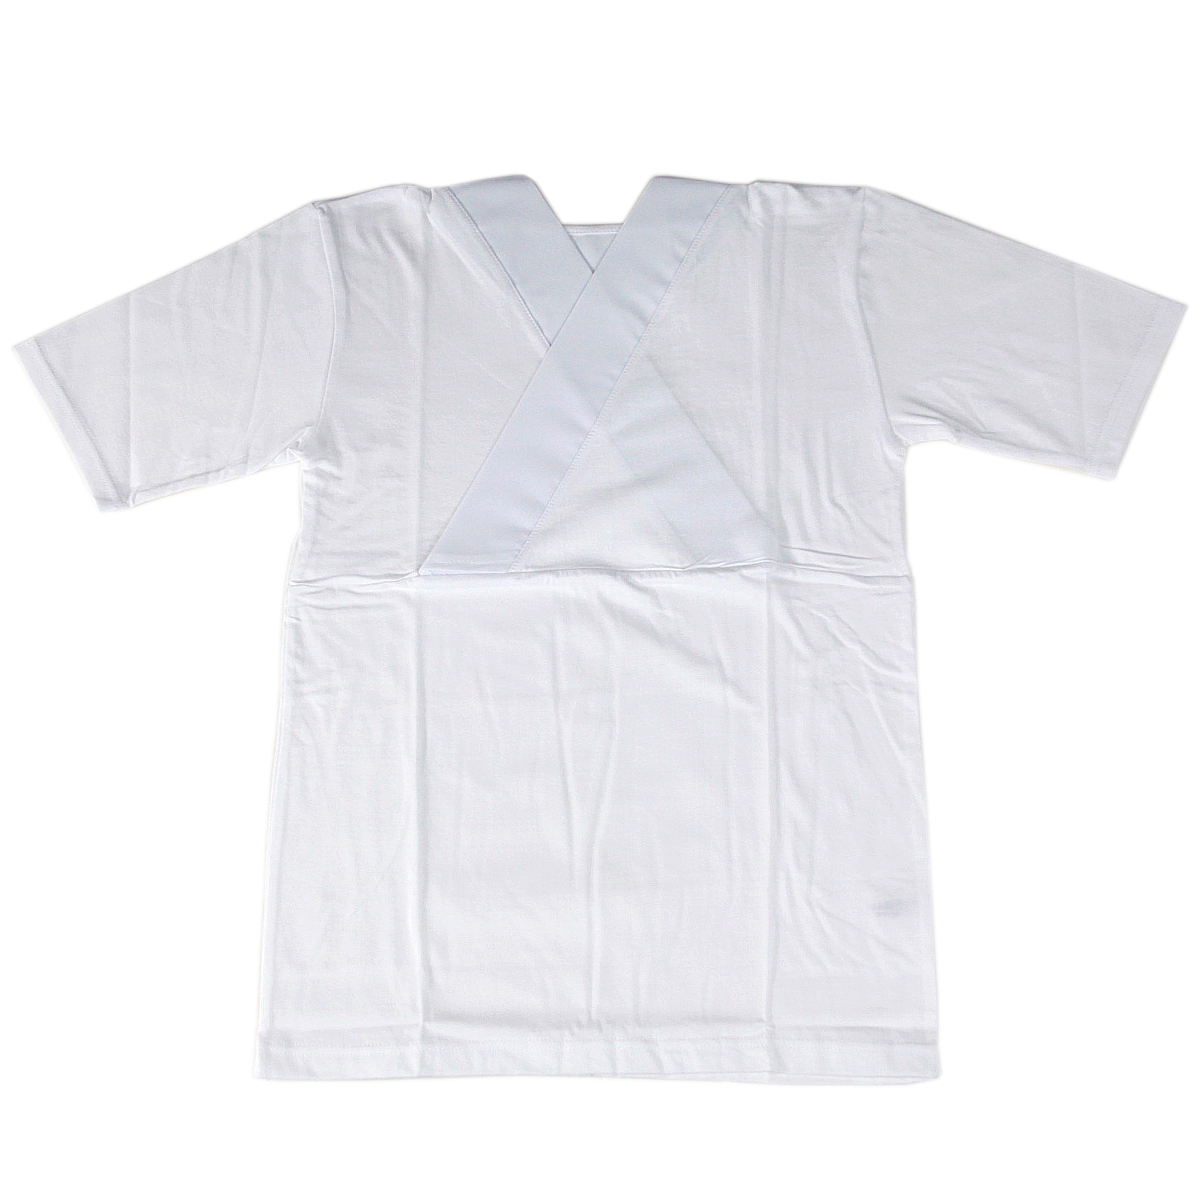 新らくらくTシャツ半襦袢 女性用 半袖 半衿付き 綿100% M/L/LL-Size